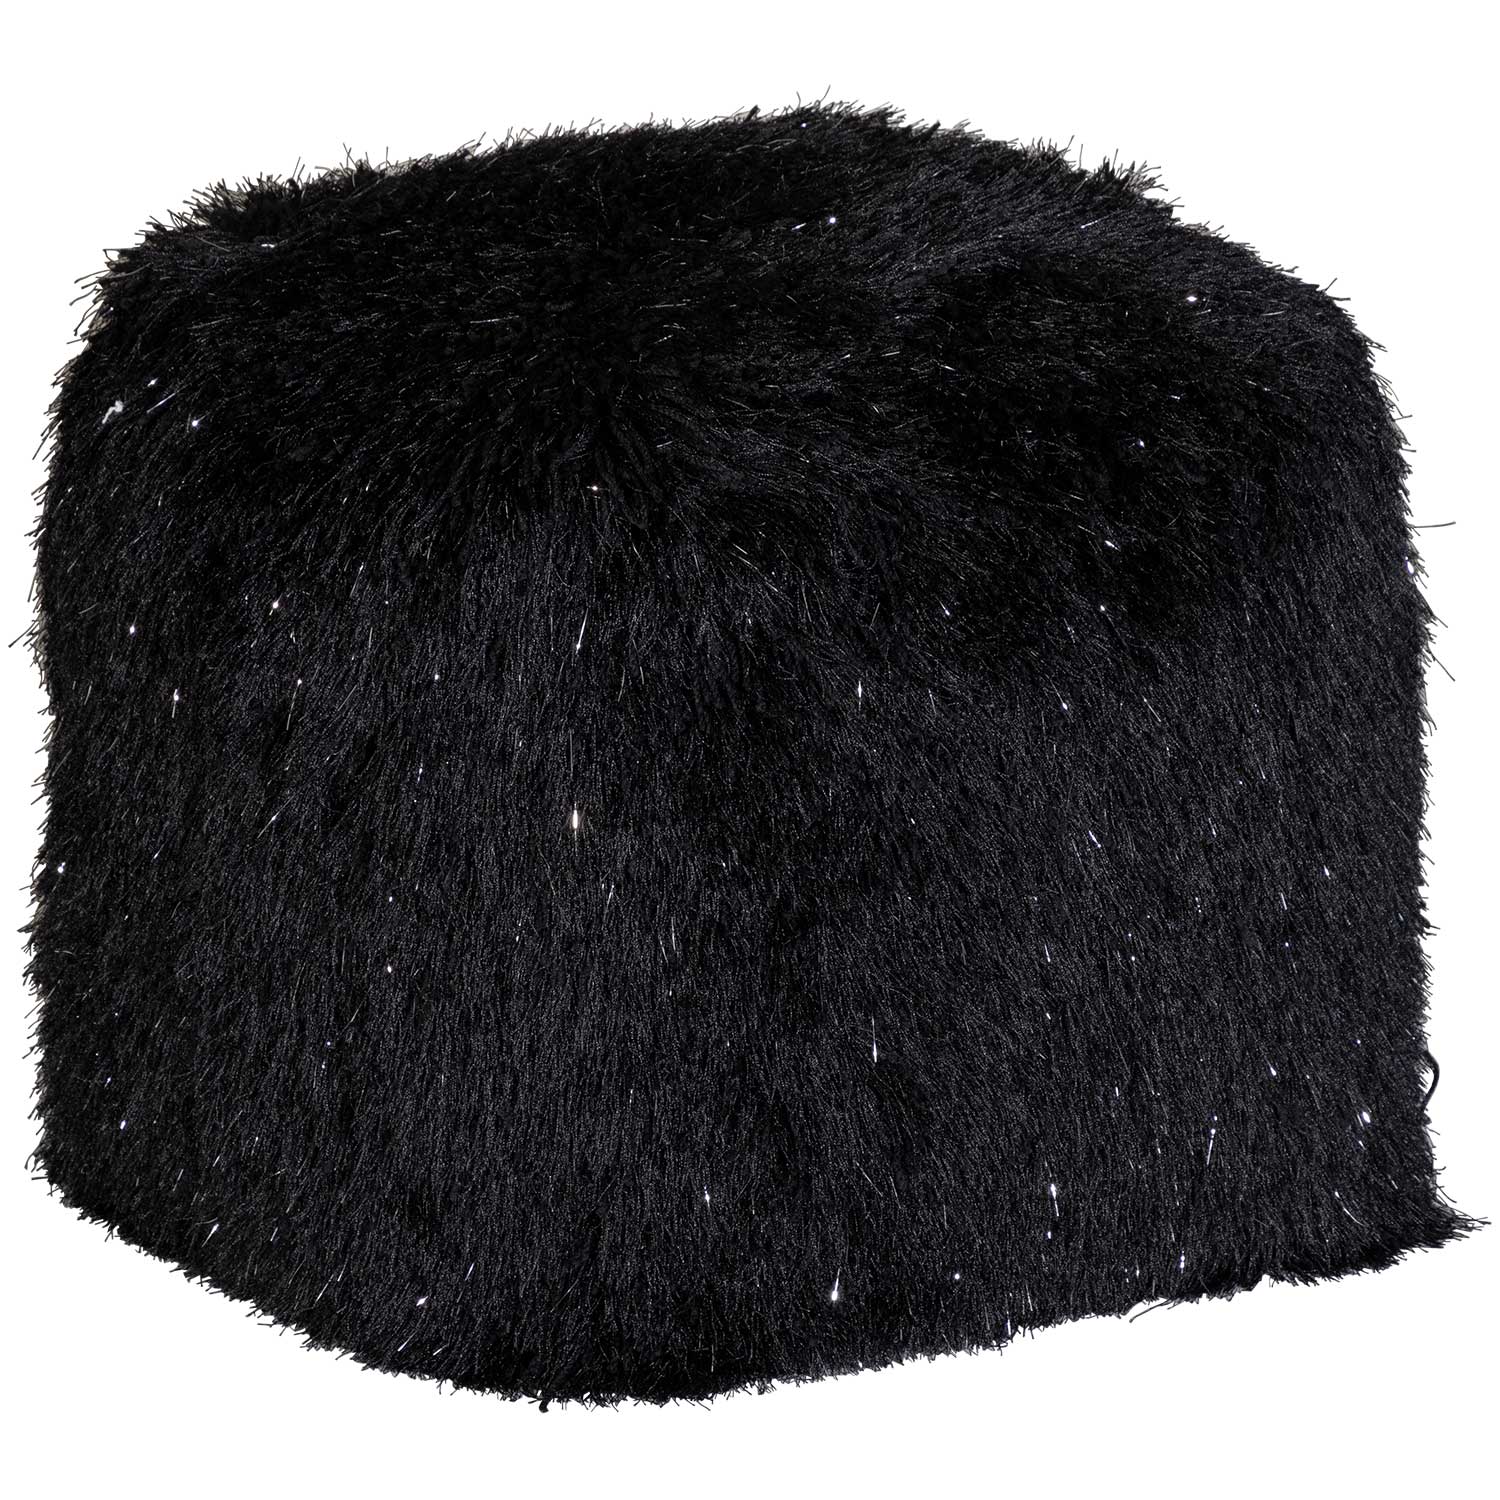 Bean Bag Chair & Lounger Chill Sack Fabric: Black Faux Rabbit Fur